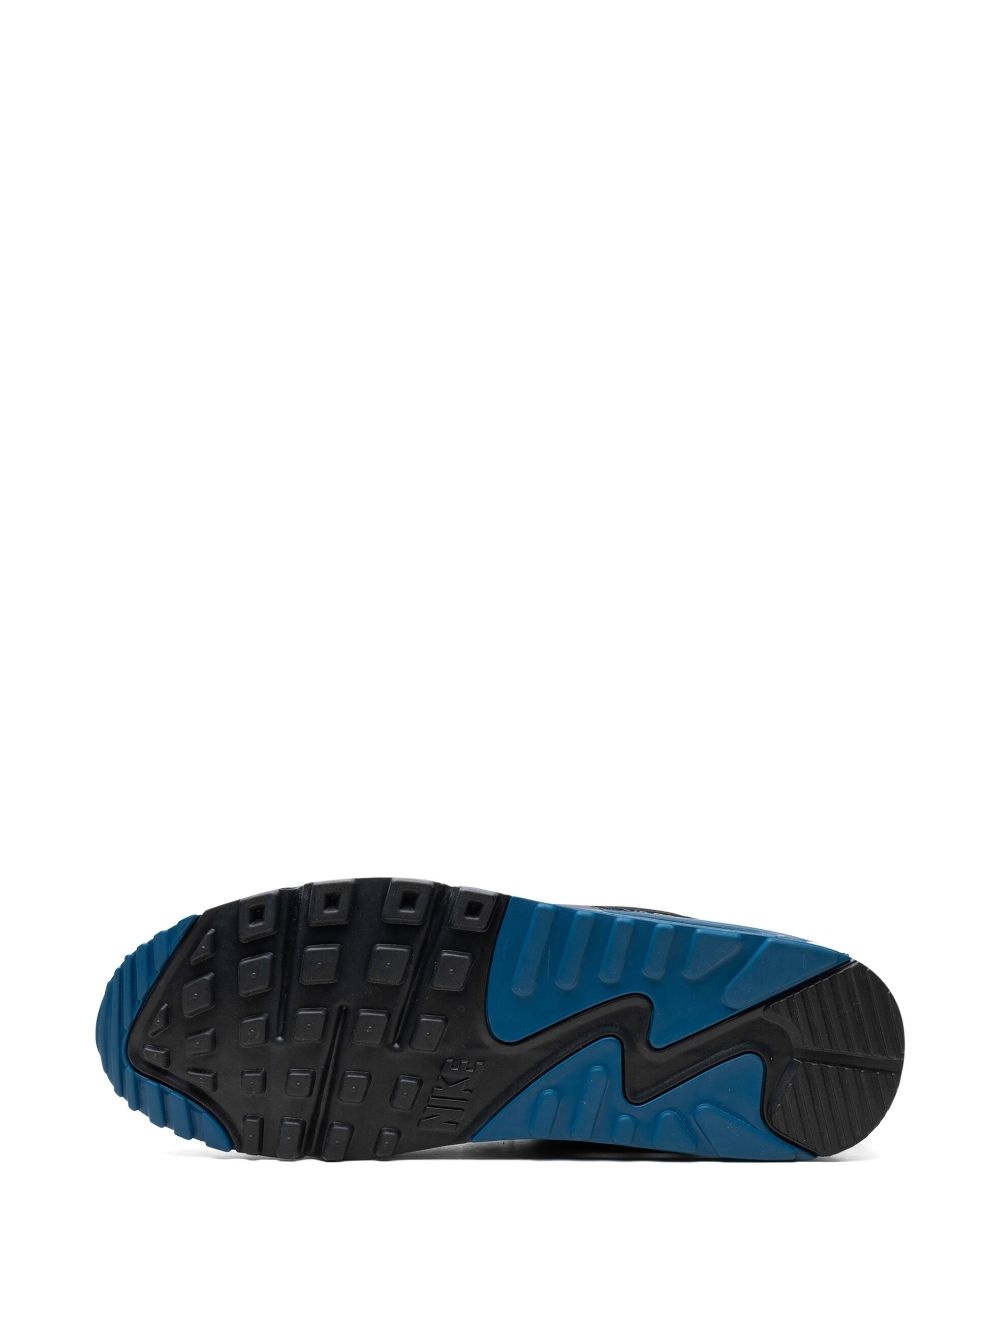 Air Max 90 "Black/Teal Blue" sneakers - 4